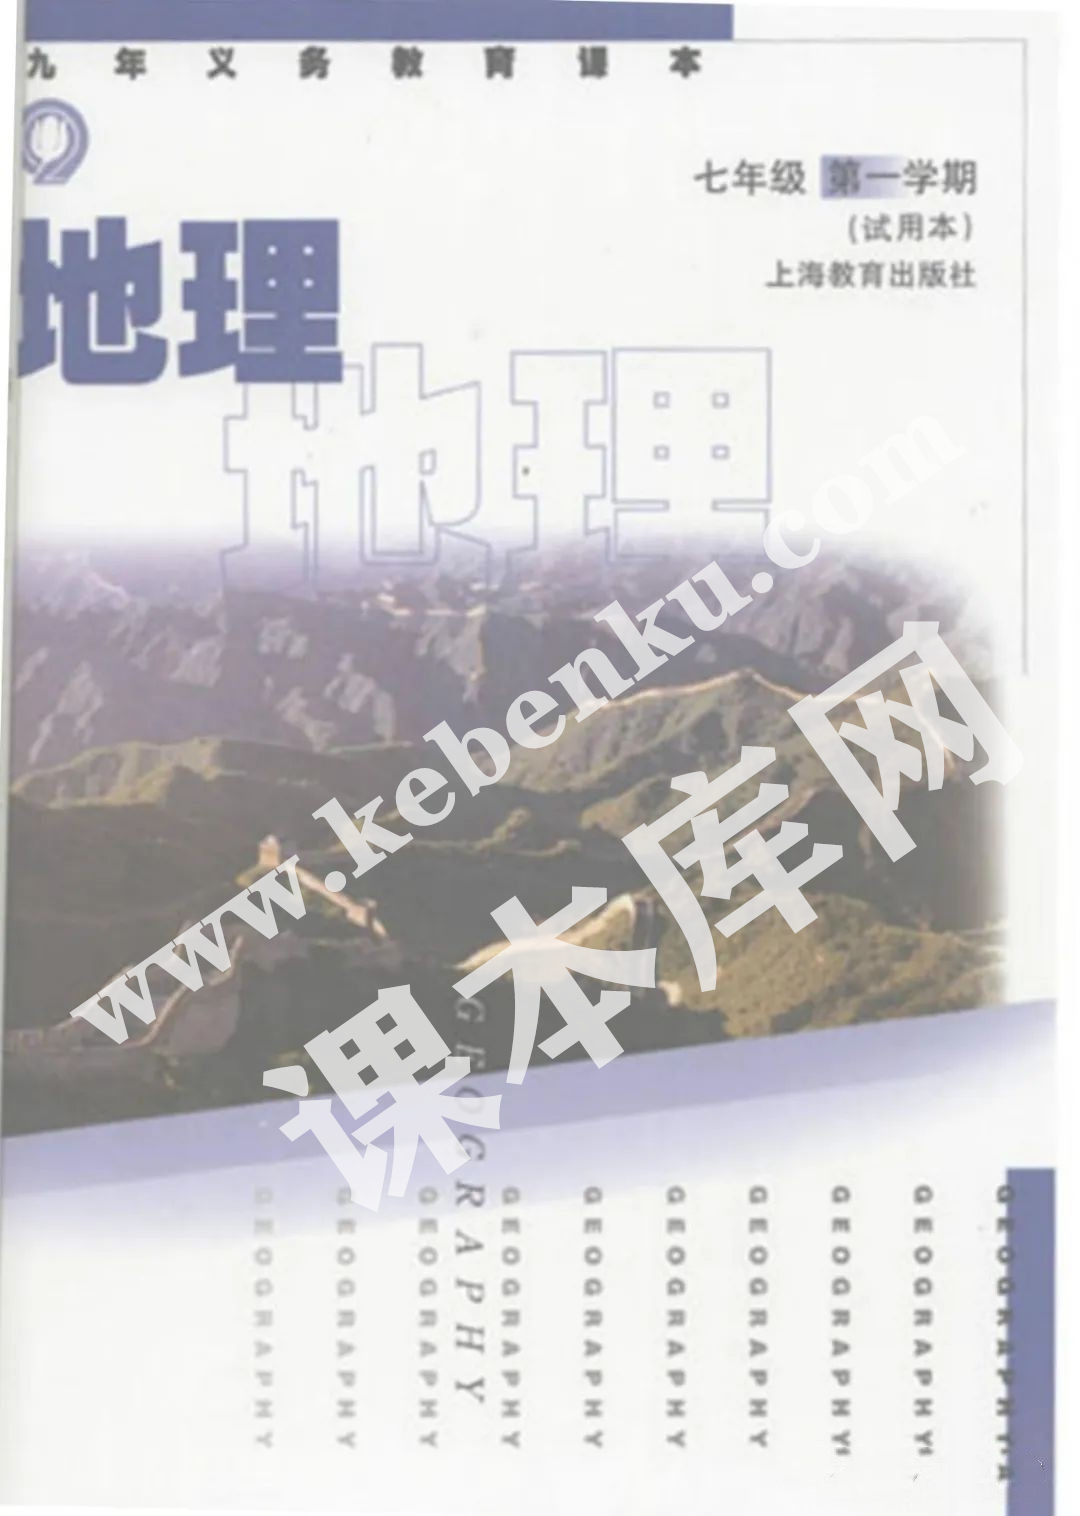 上海教育出版社九年义务教育课本七年级地理第一学期(试用本)电子课本